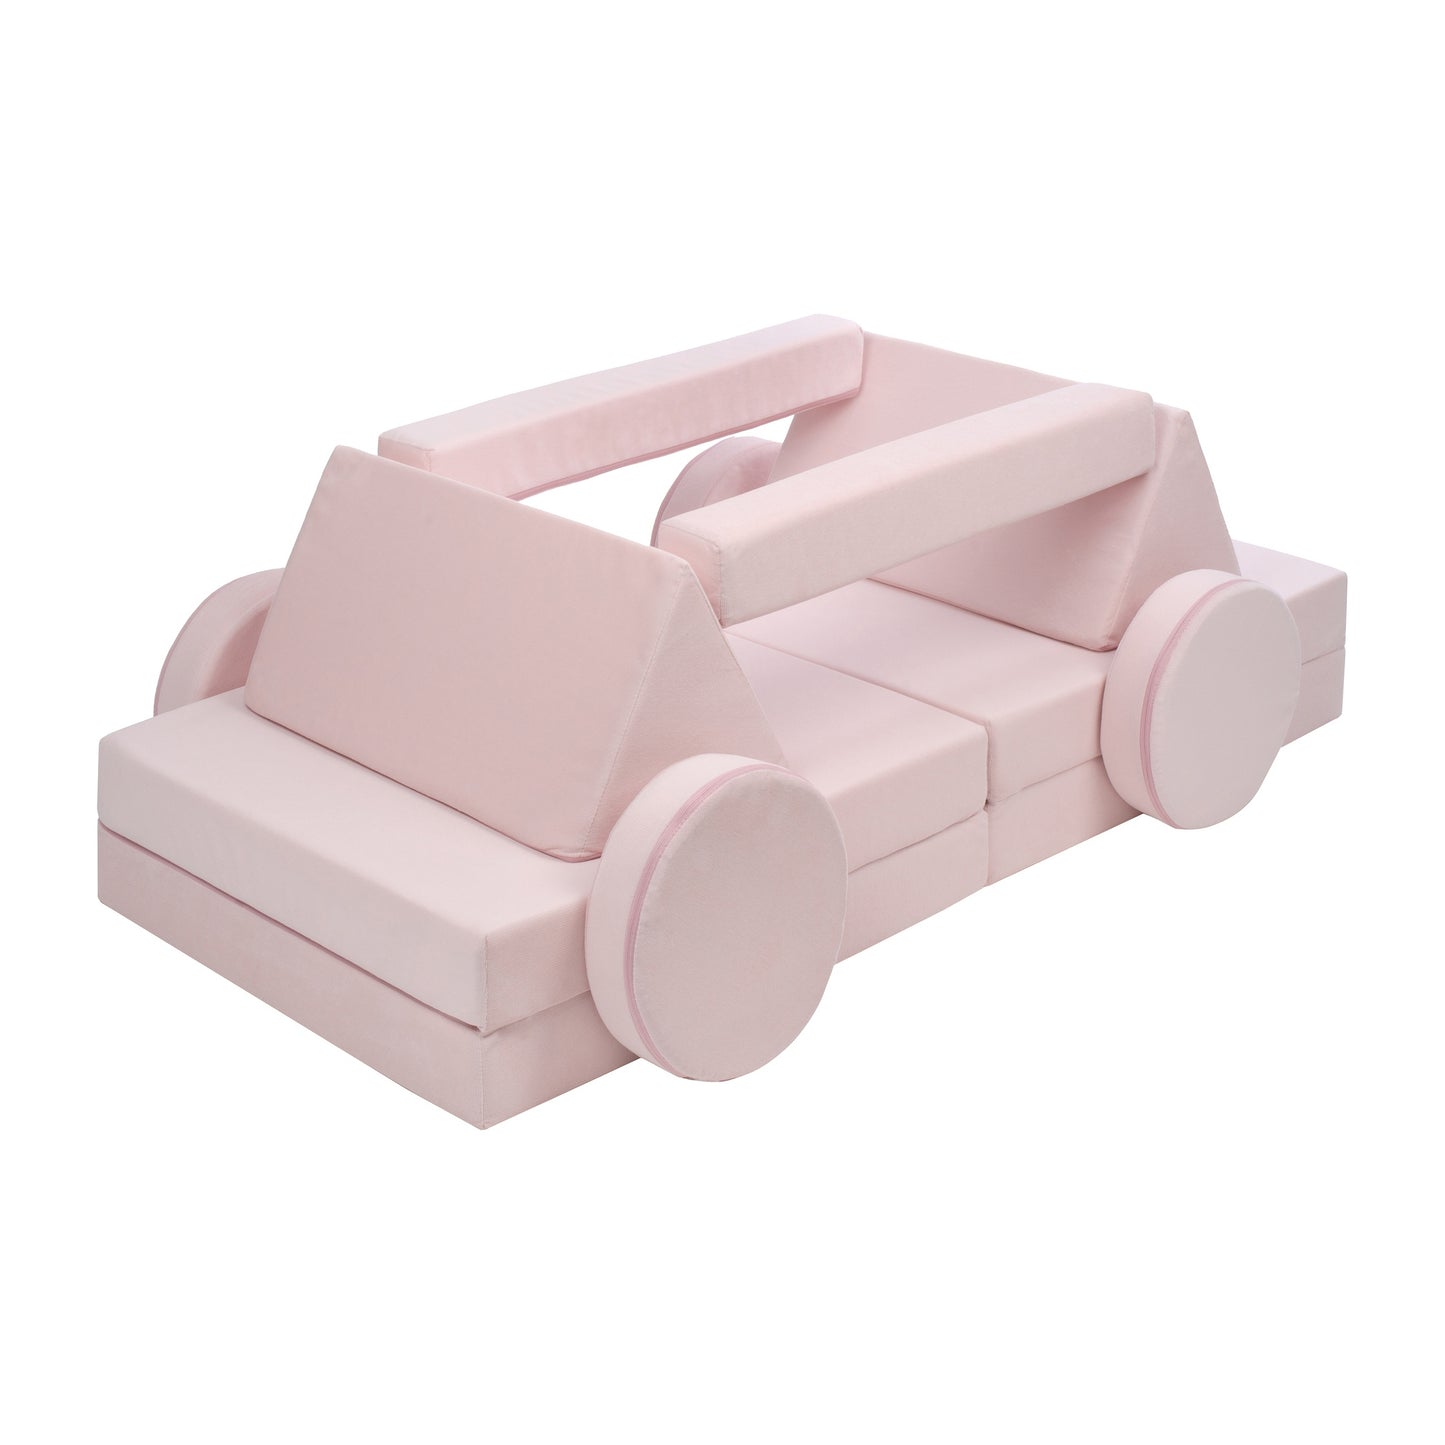 Soft Modular Sofa, Pastel Pink